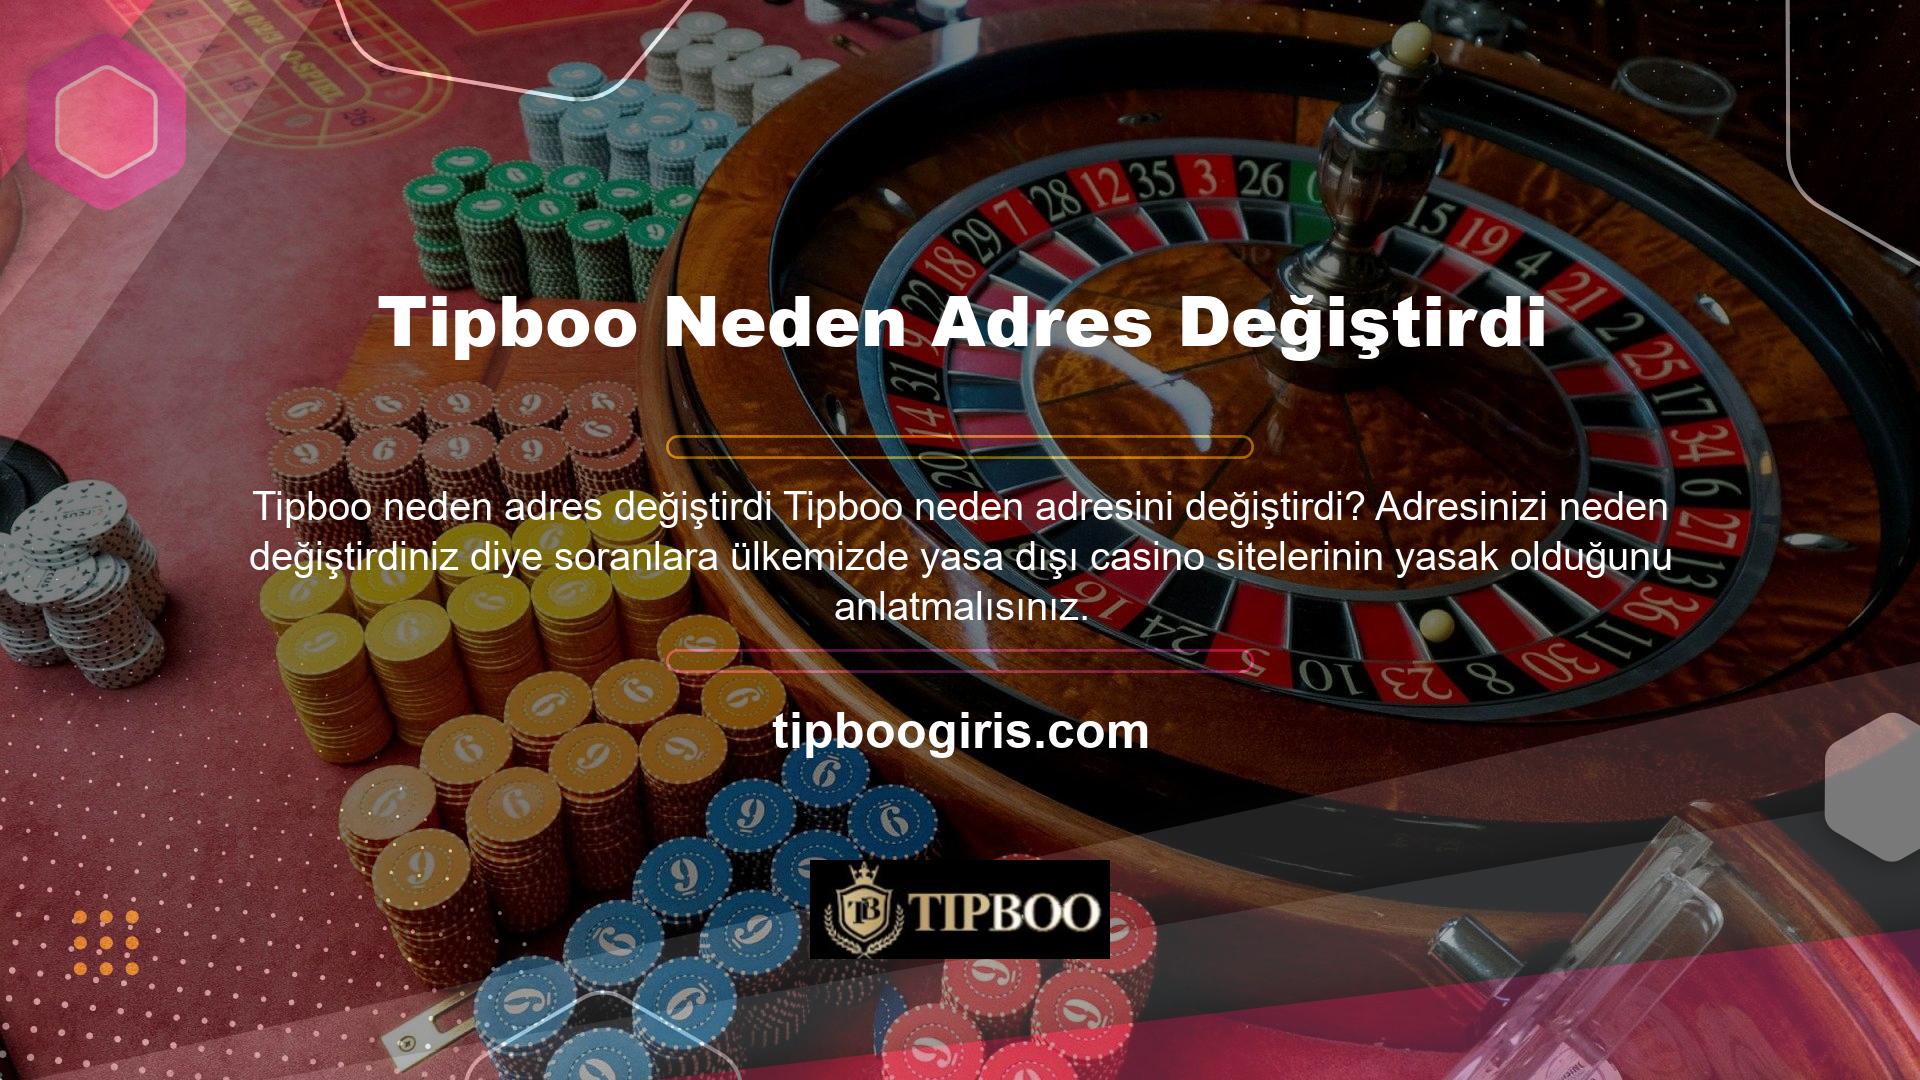 Tipboo bahis sitesi, mükemmel hizmet anlayışı, yüksek oranları ve oyunculara yönelik bol miktarda bonus seçeneği ile sürekli gelişen bir platformdur